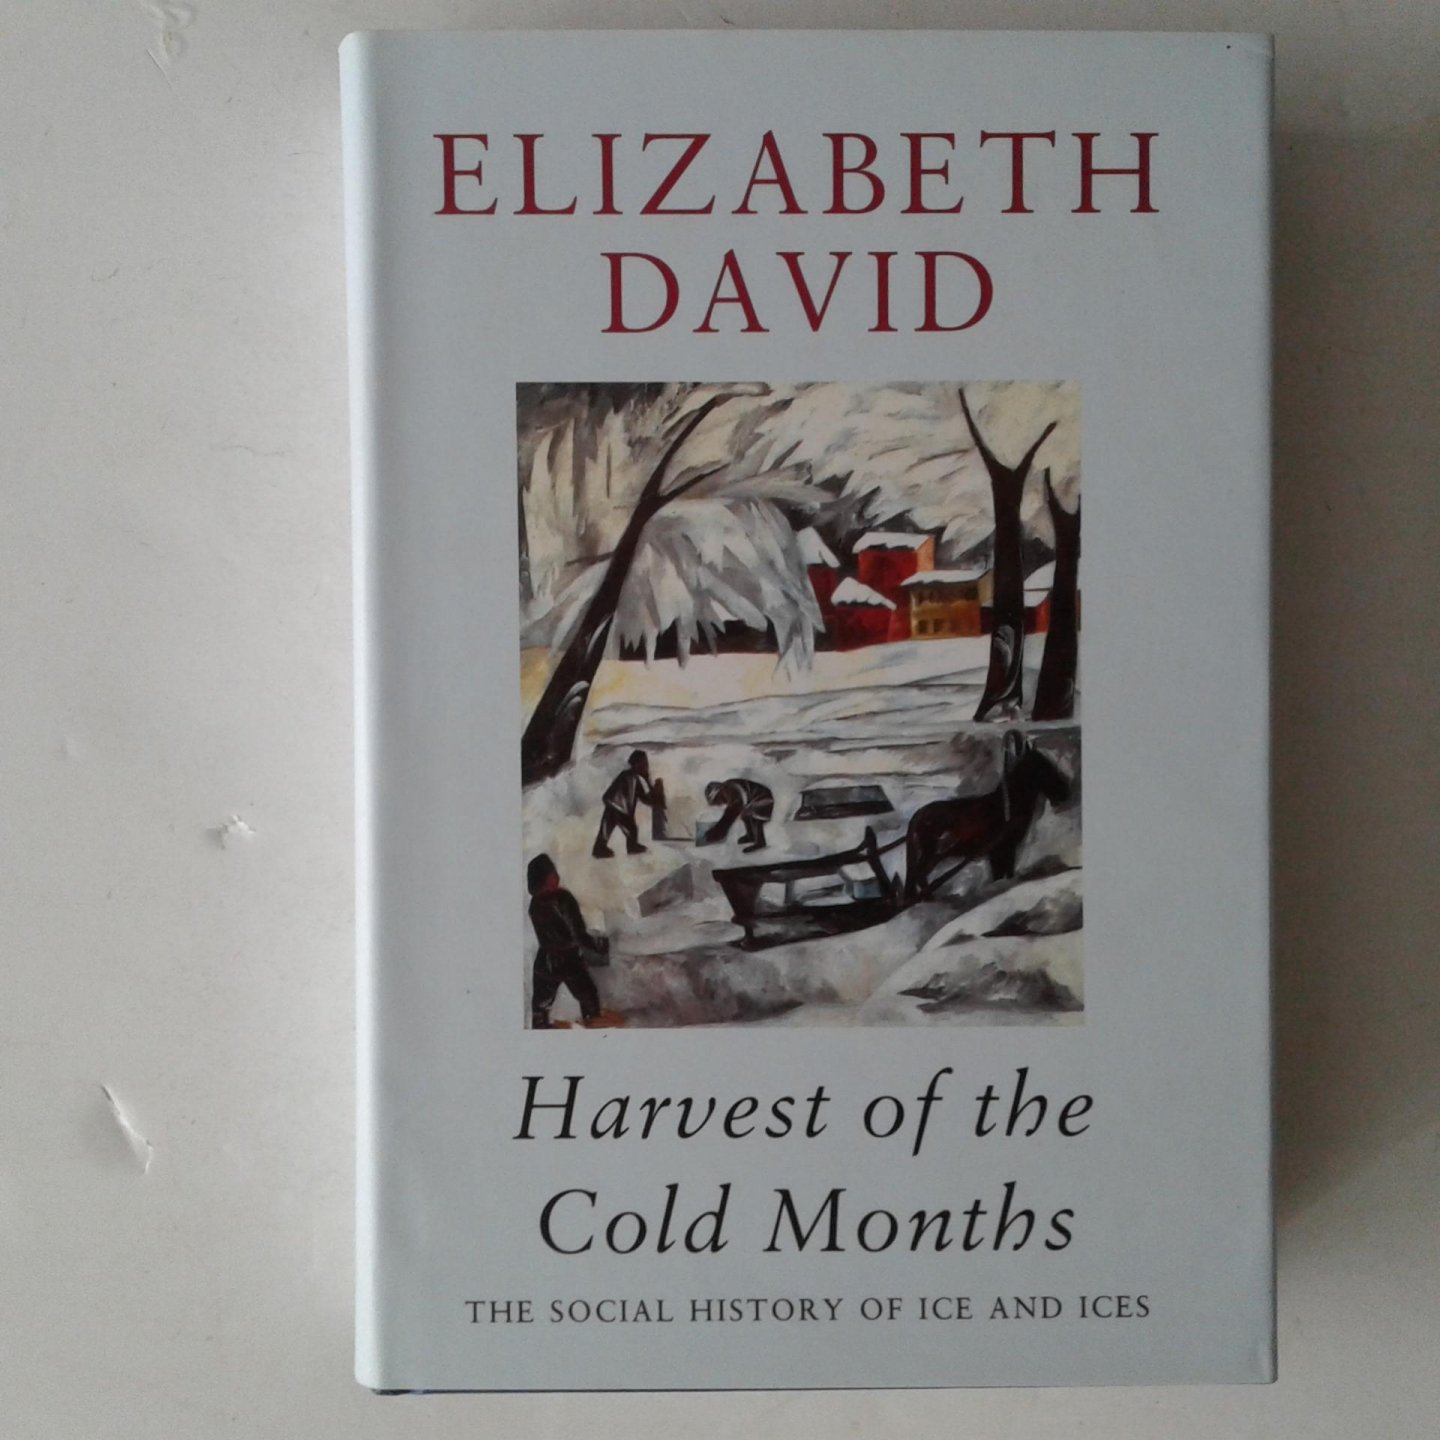 David, Elizabeth - Harvest of the Cold Months